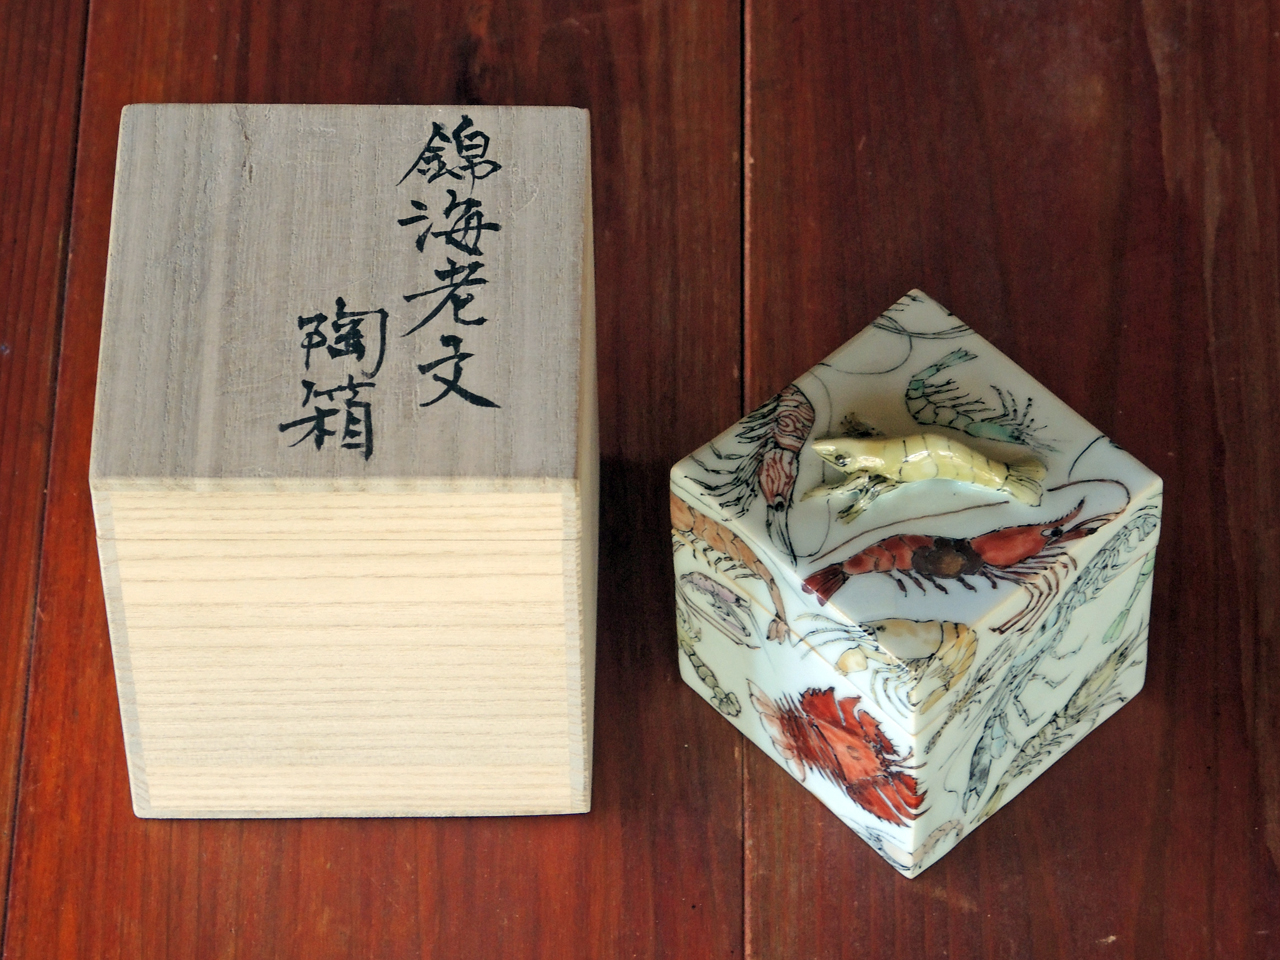 Omer Koc’s Ceramic Collection （陶磁コレクション図録）へのインタビュー記事日本語原稿。その1。